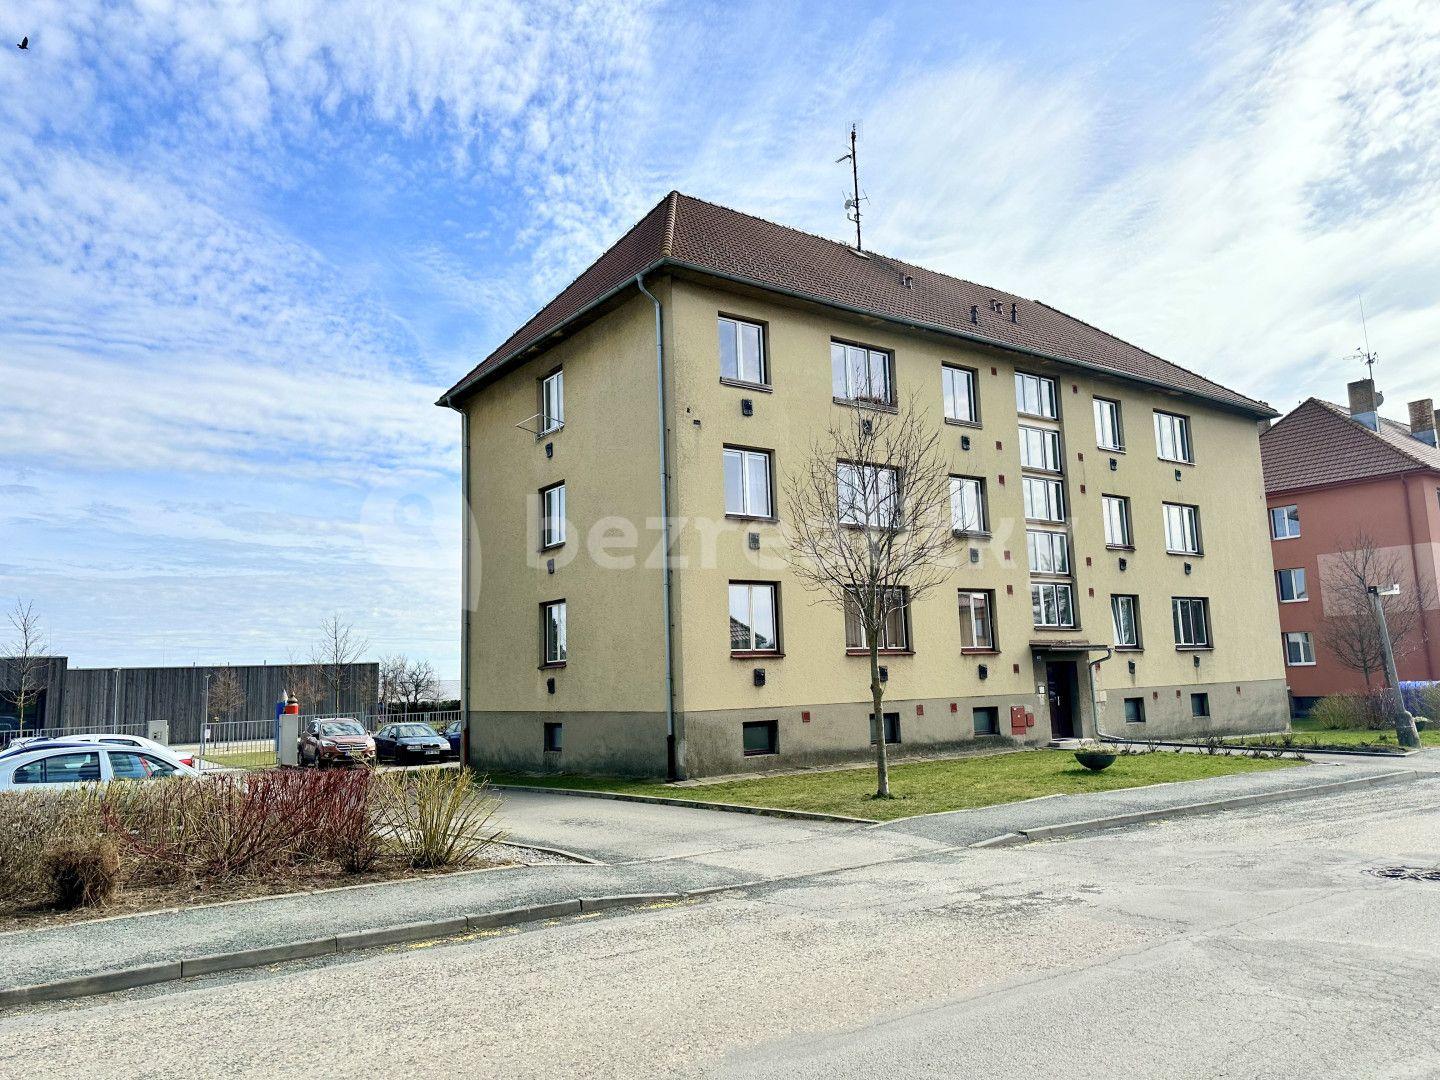 3 bedroom flat for sale, 73 m², Za Branou, Pacov, Vysočina Region